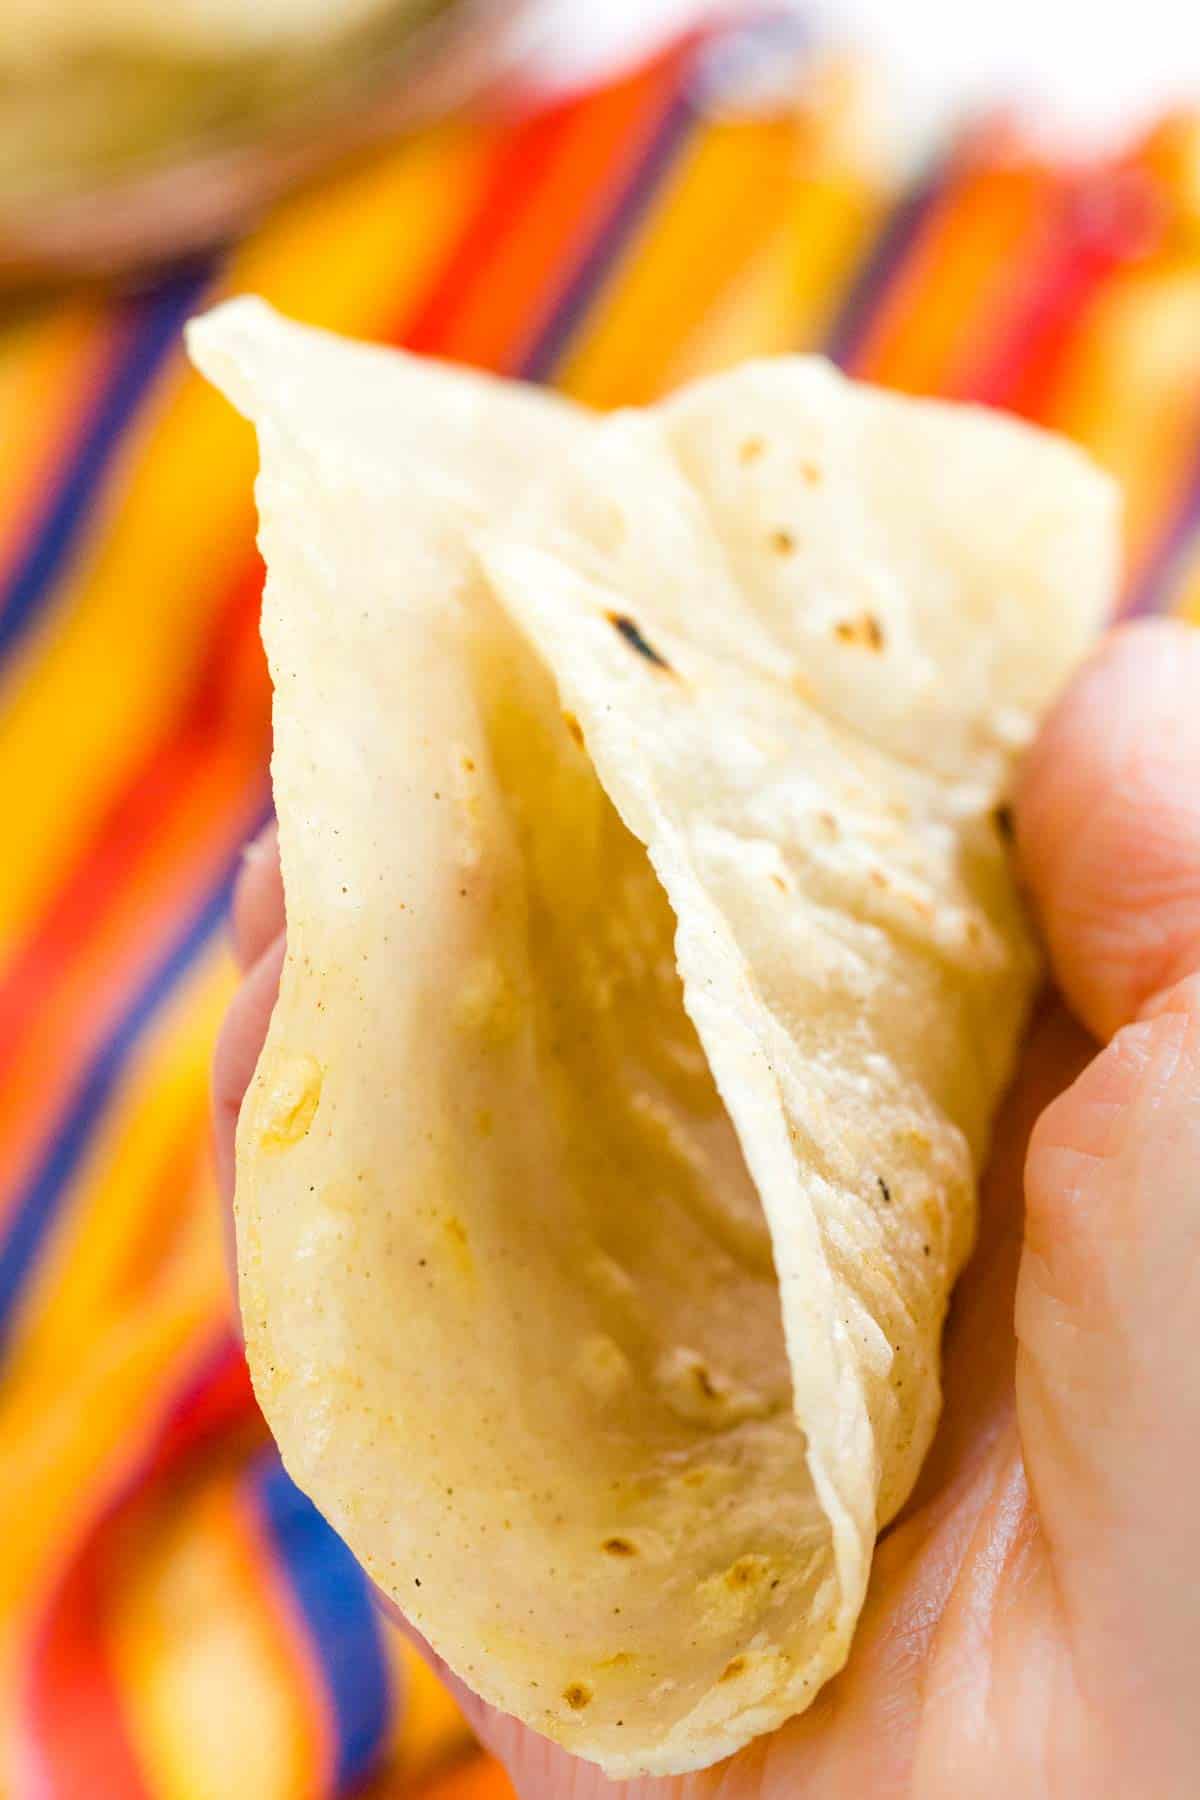 A hand holds a folded gluten free tortilla.